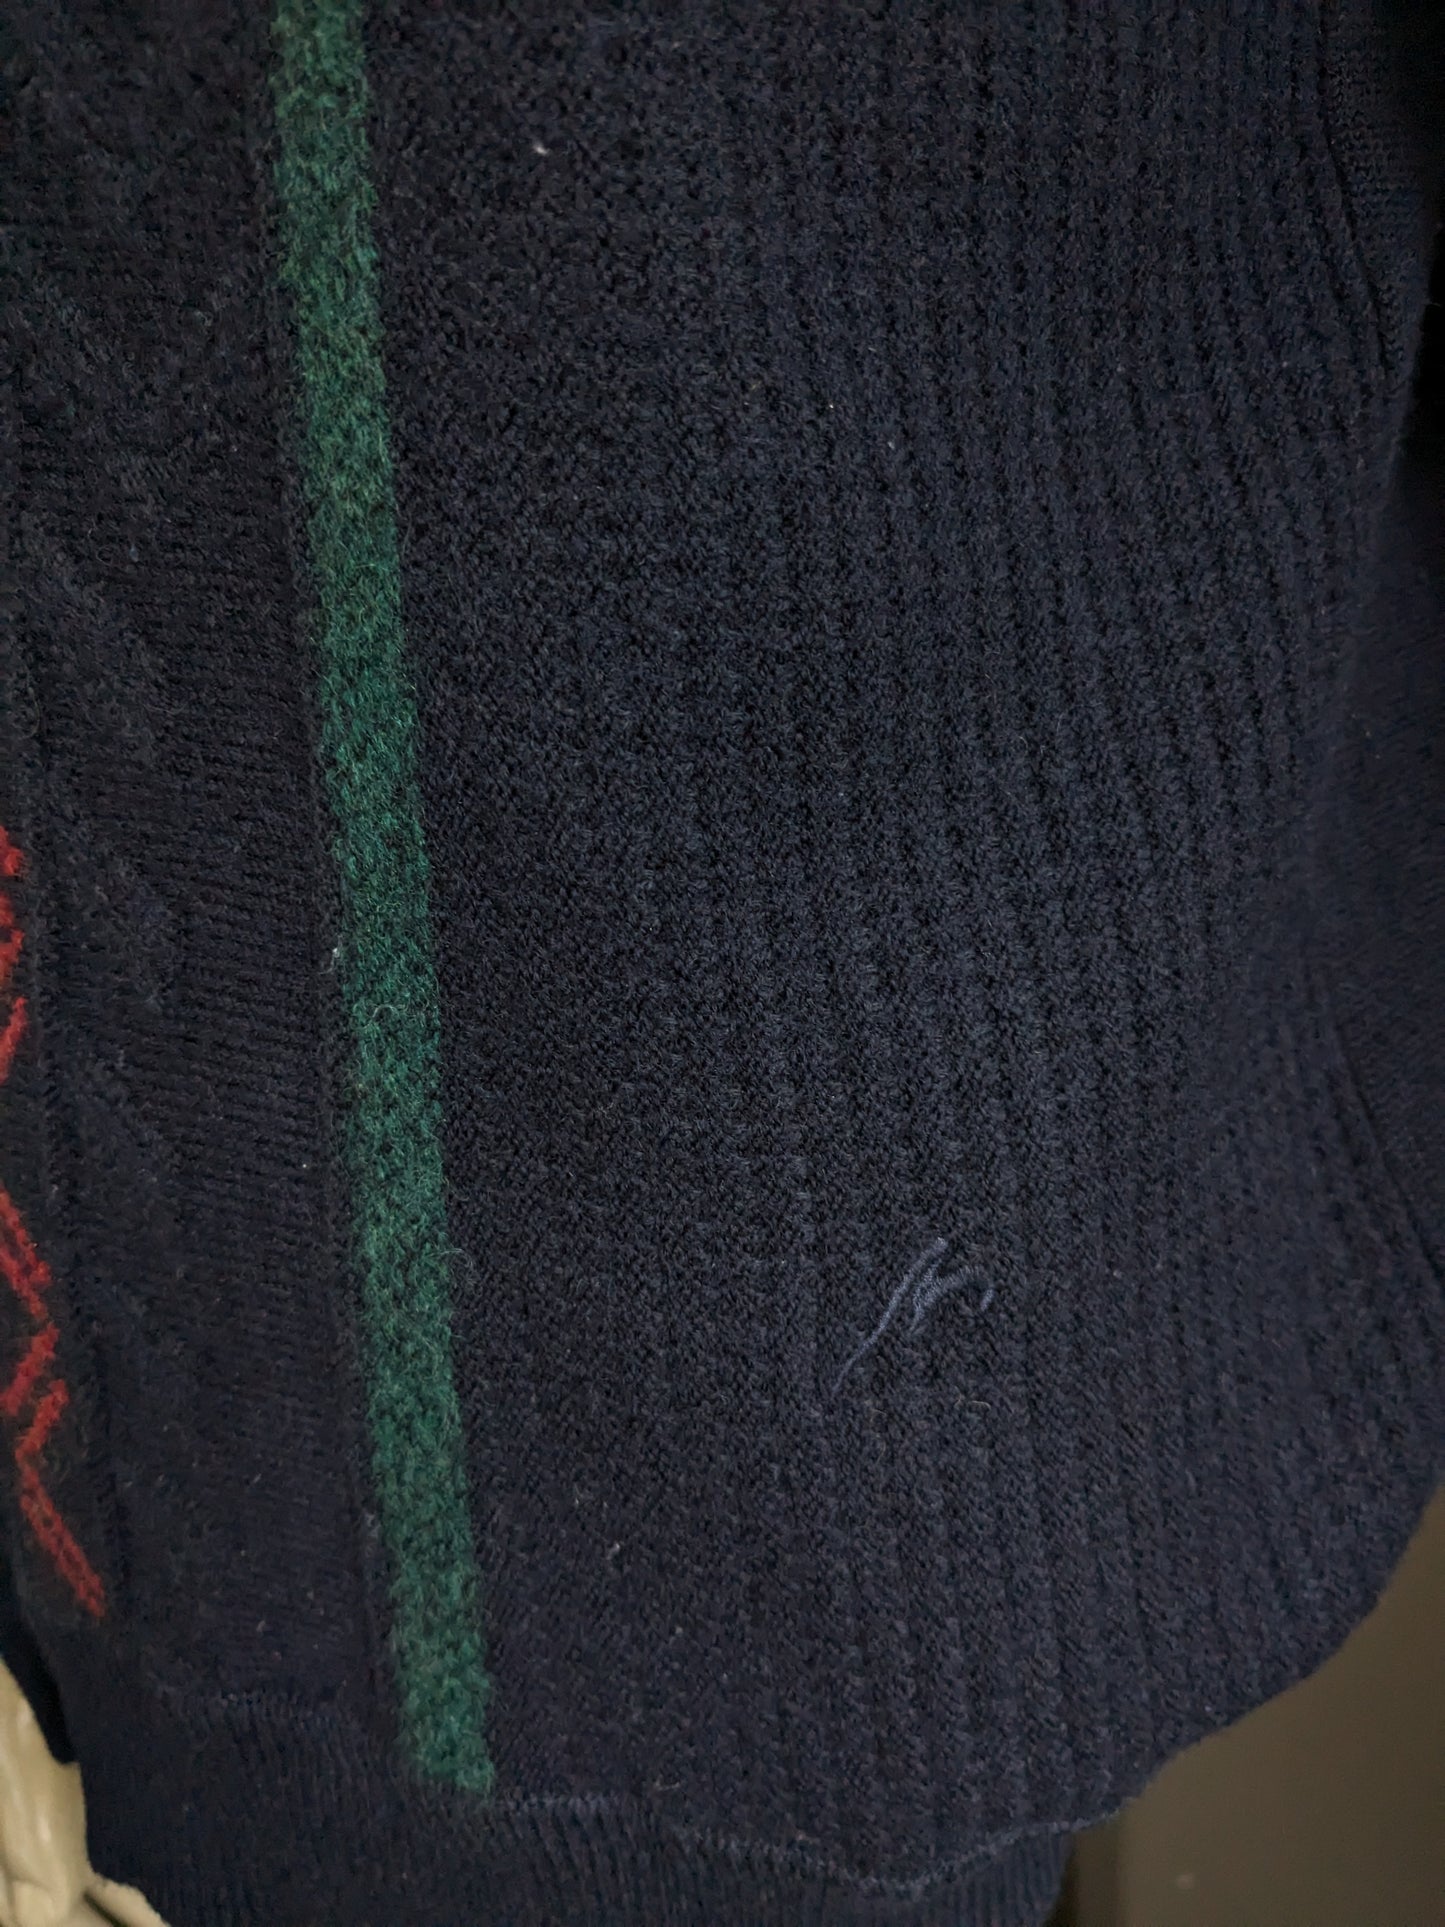 Pull vintage Maselli en laine avec col en V. Bleu foncé avec motif bleu vert rouge jaune. Taille L.